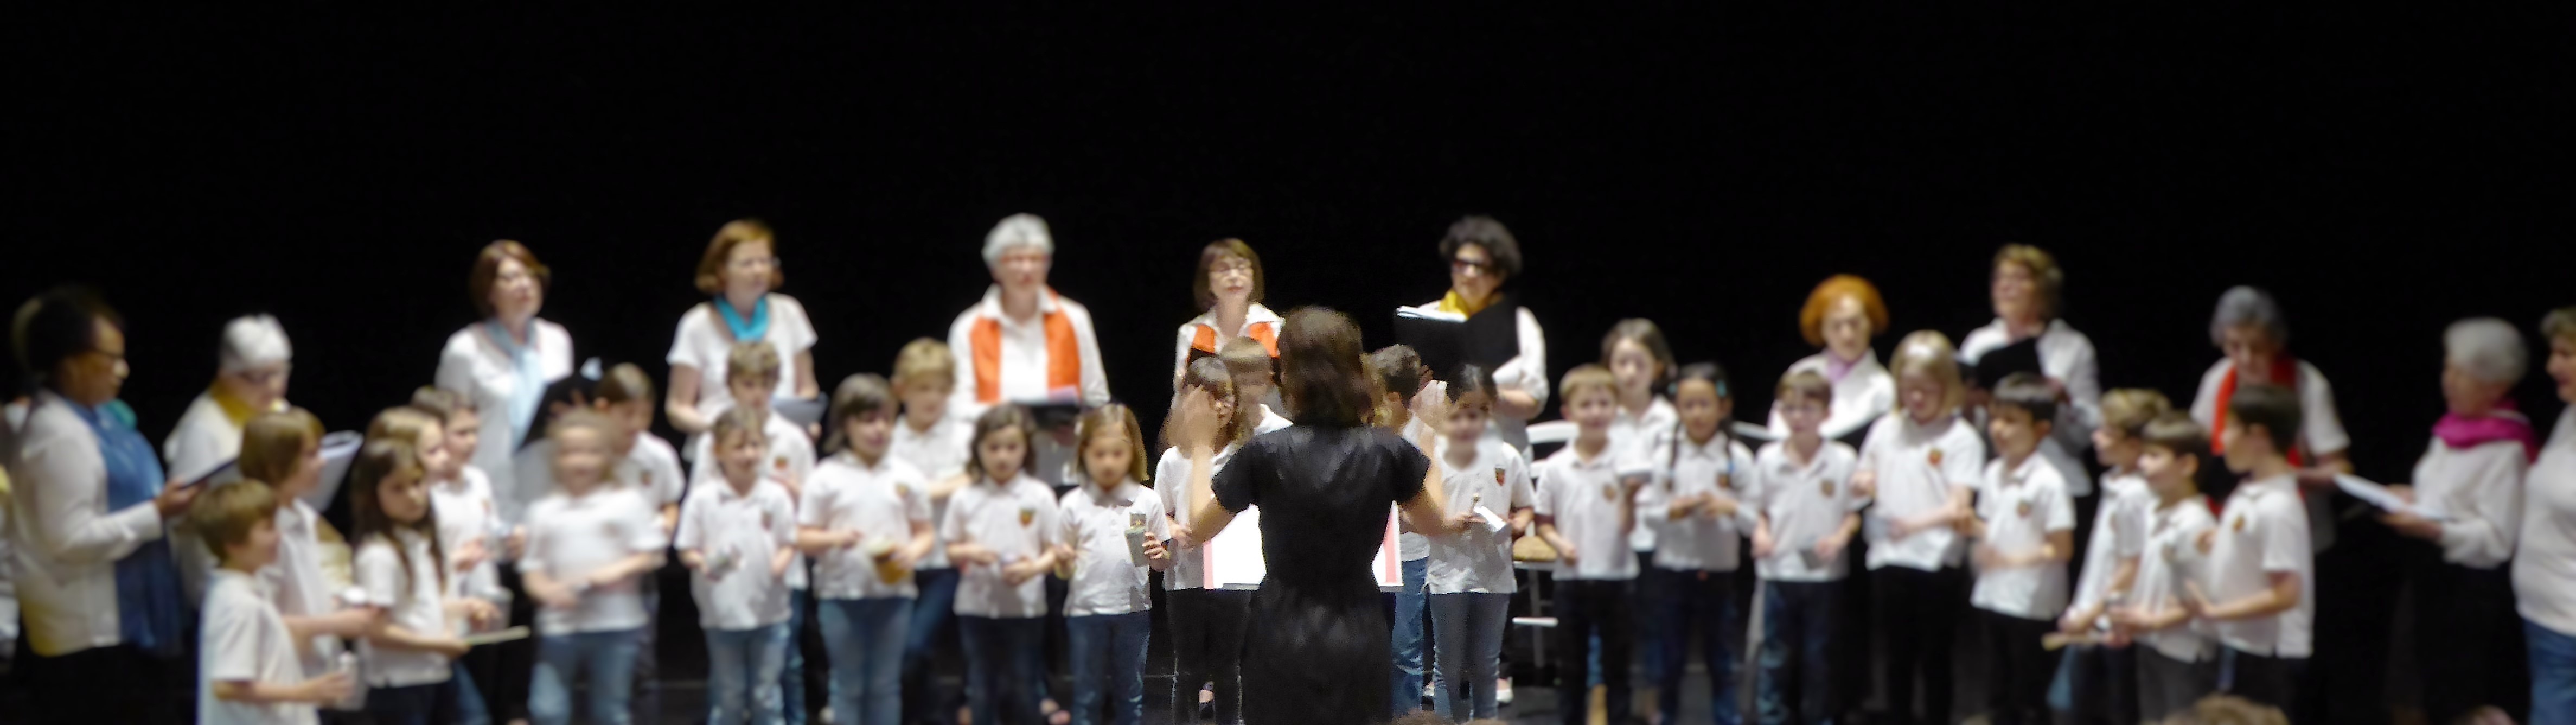 Chorale à l'école - comment créer une chorale à l'école primaire organiser un concert chorale d'enfants